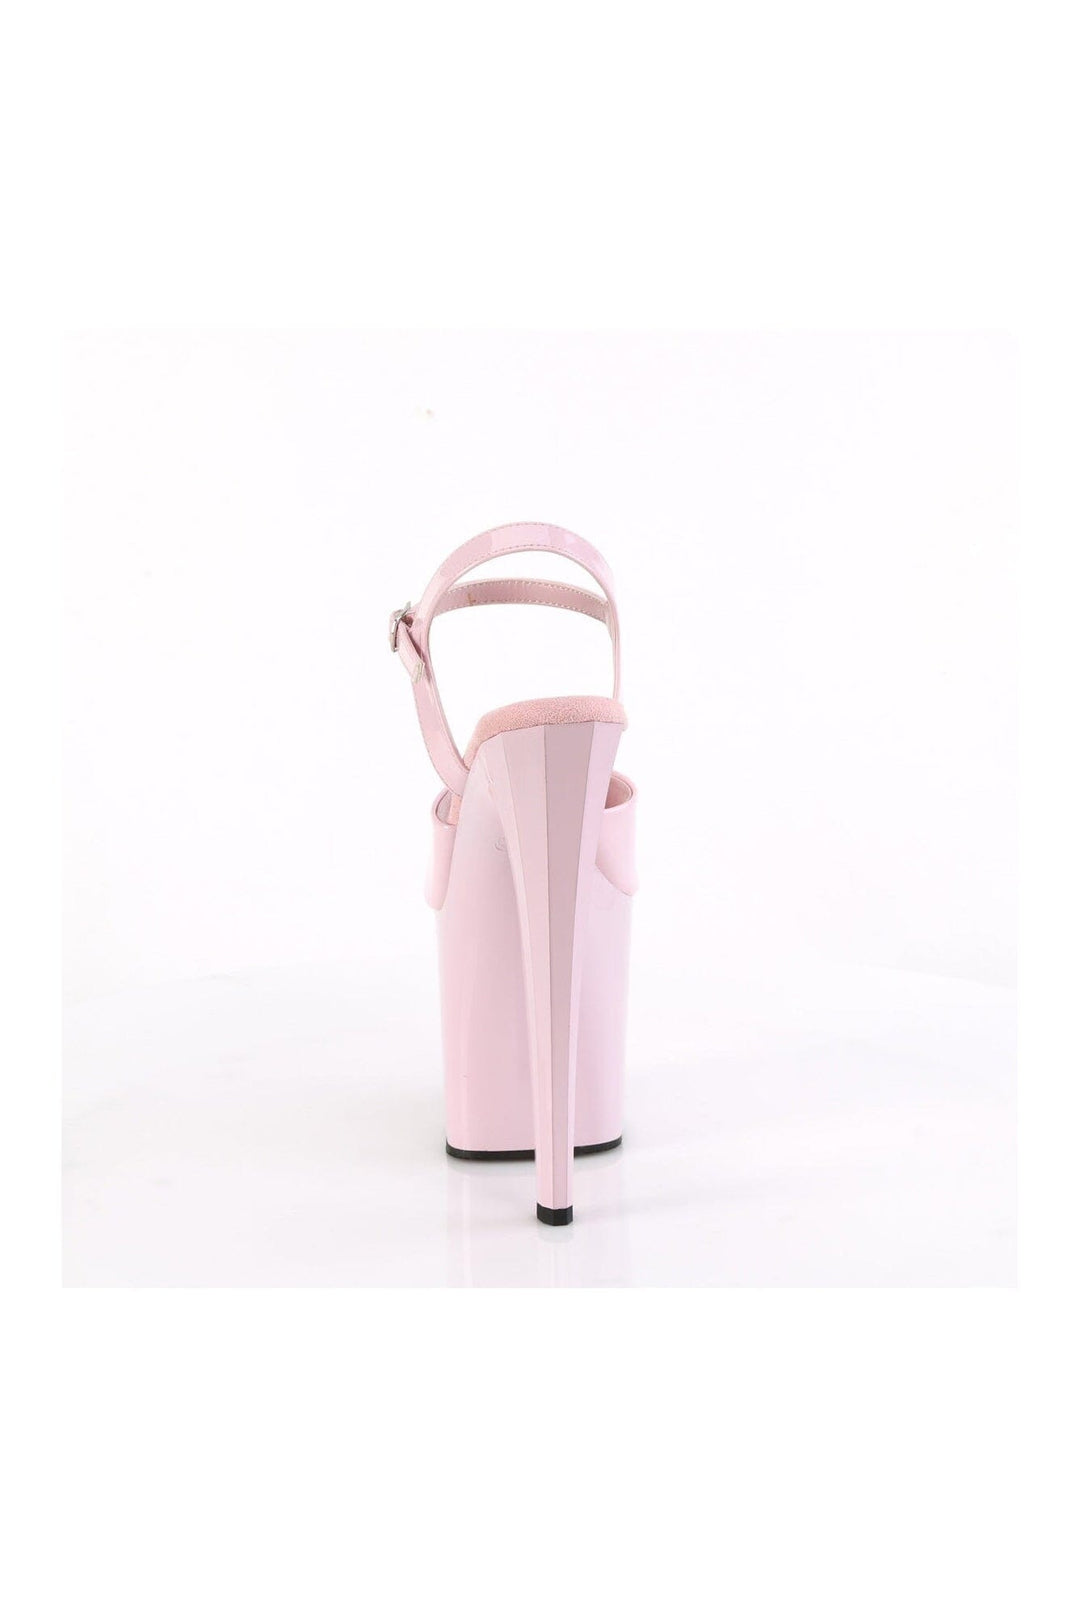 ENCHANT-709 Pink Patent Sandal-Sandals-Pleaser-SEXYSHOES.COM